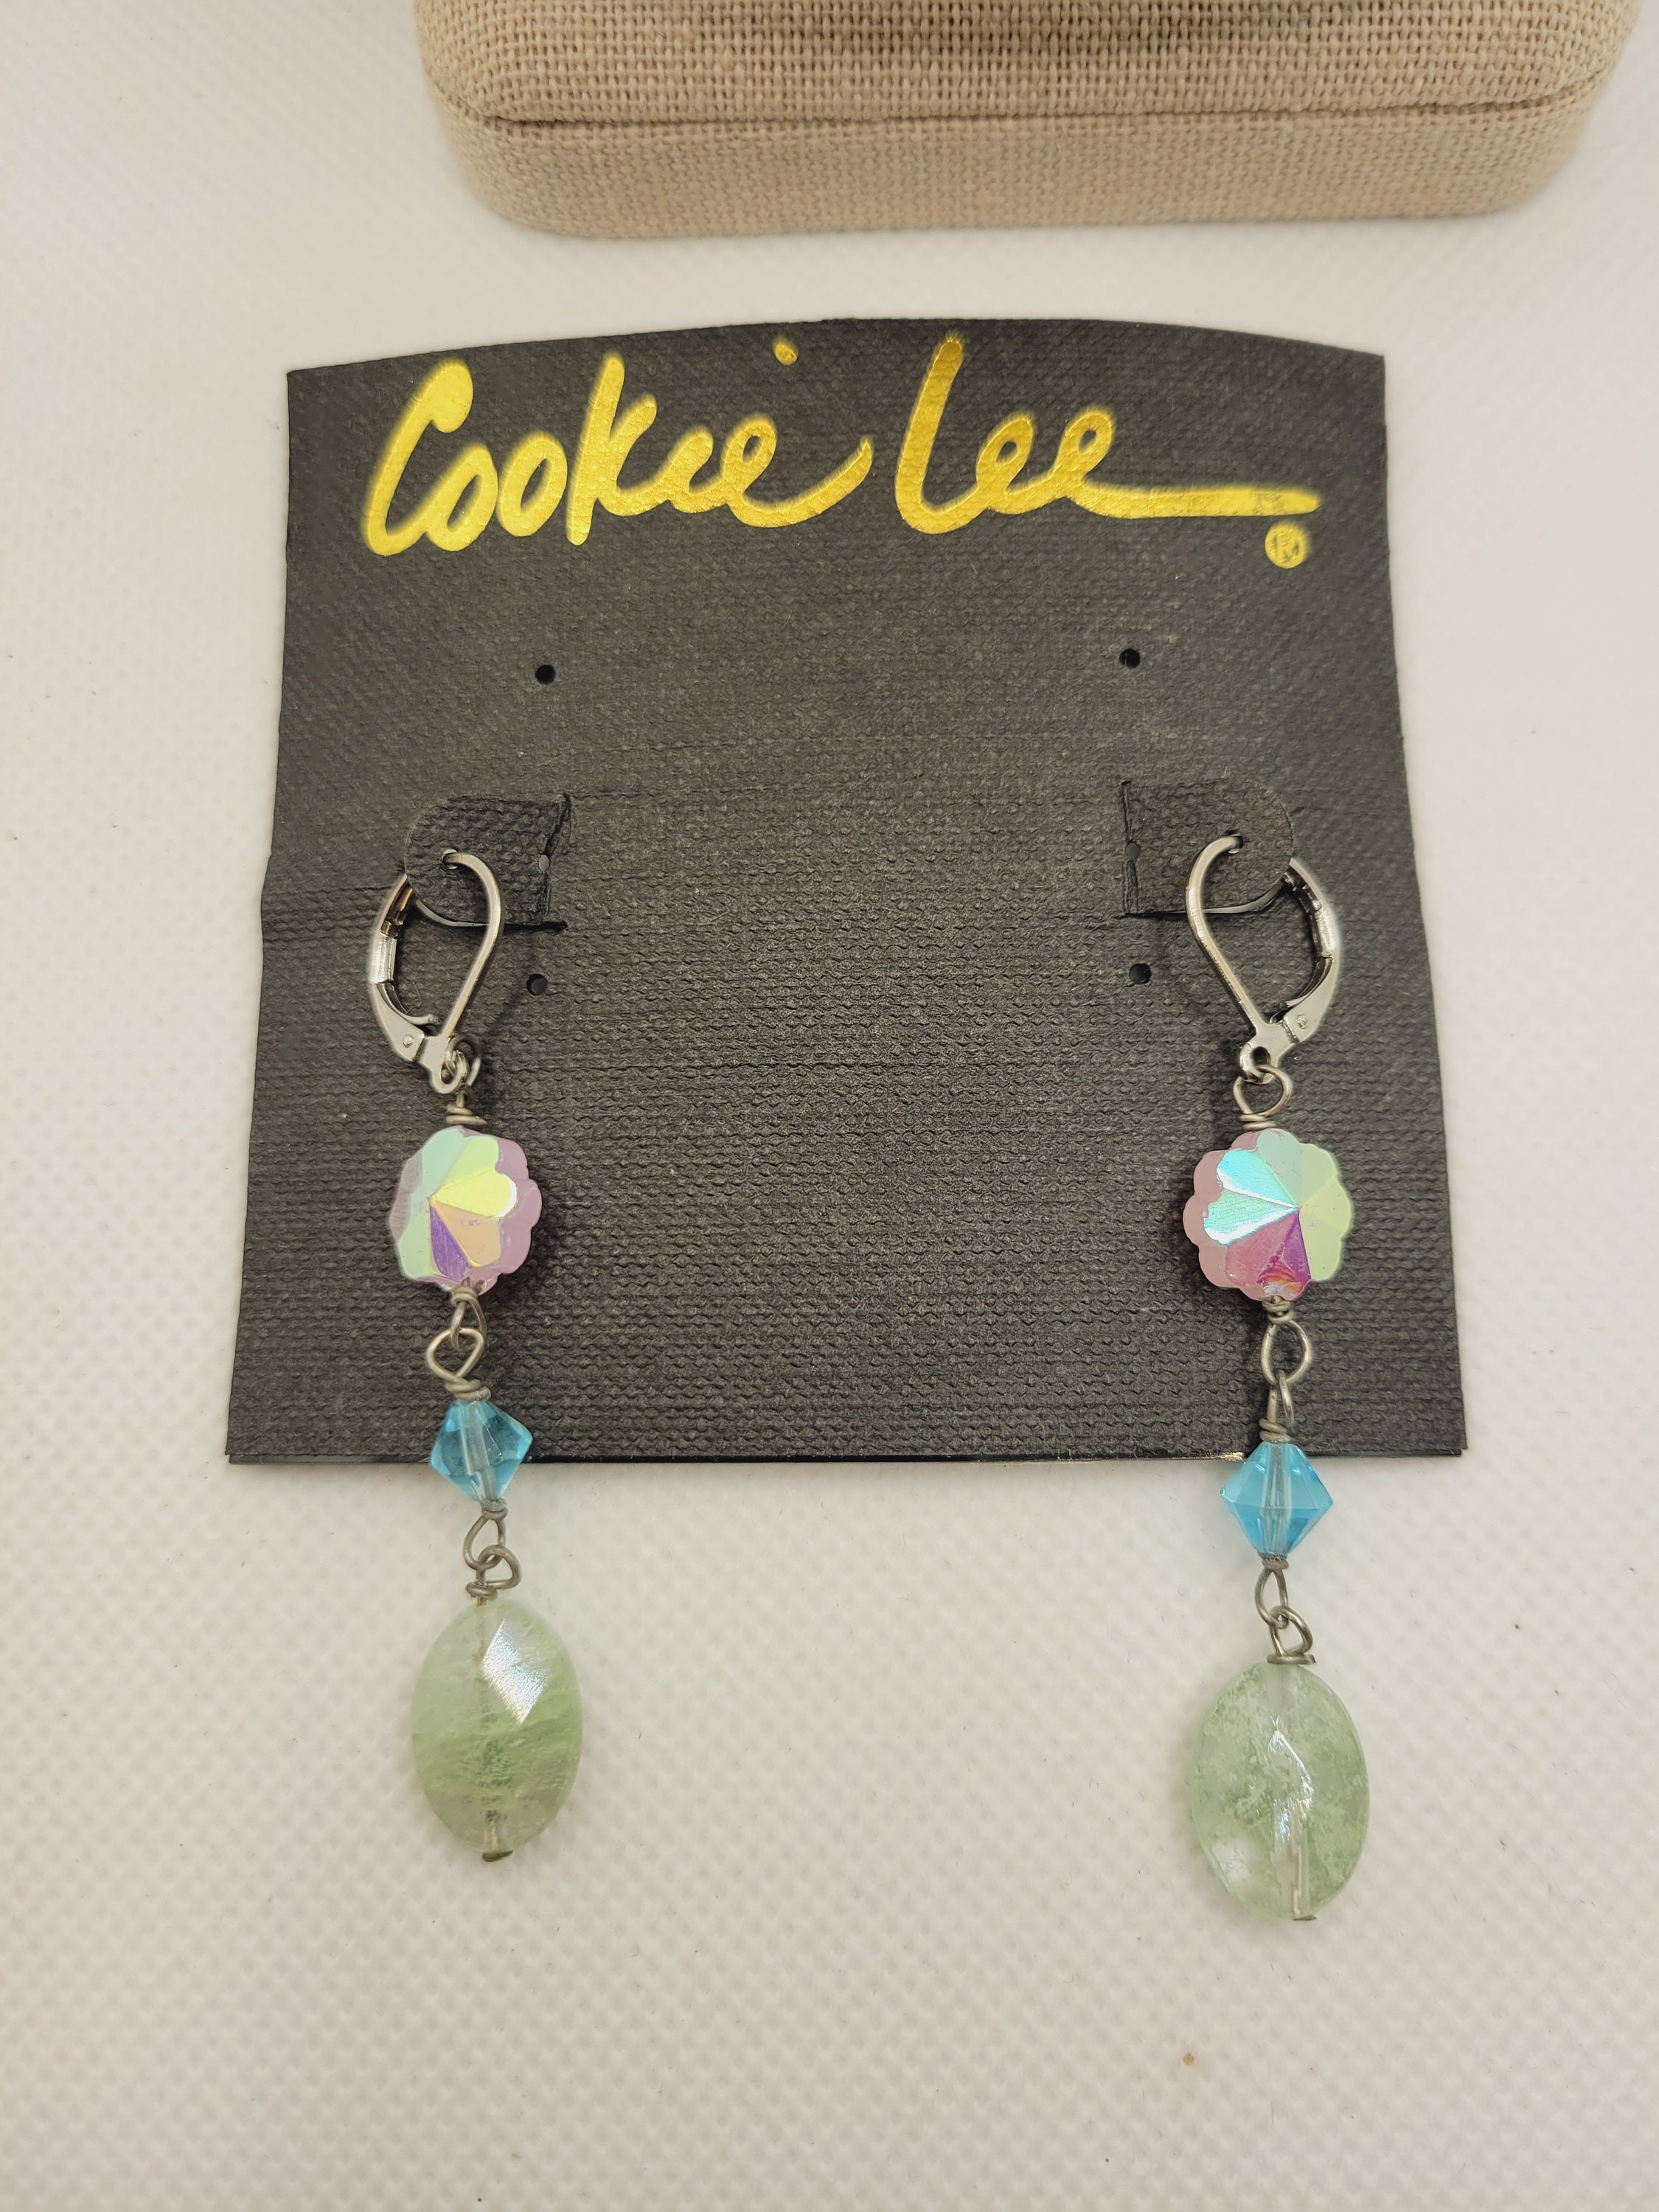 NWT Cookie Lee Earrings Original Card Genuine Crystal and - Etsy